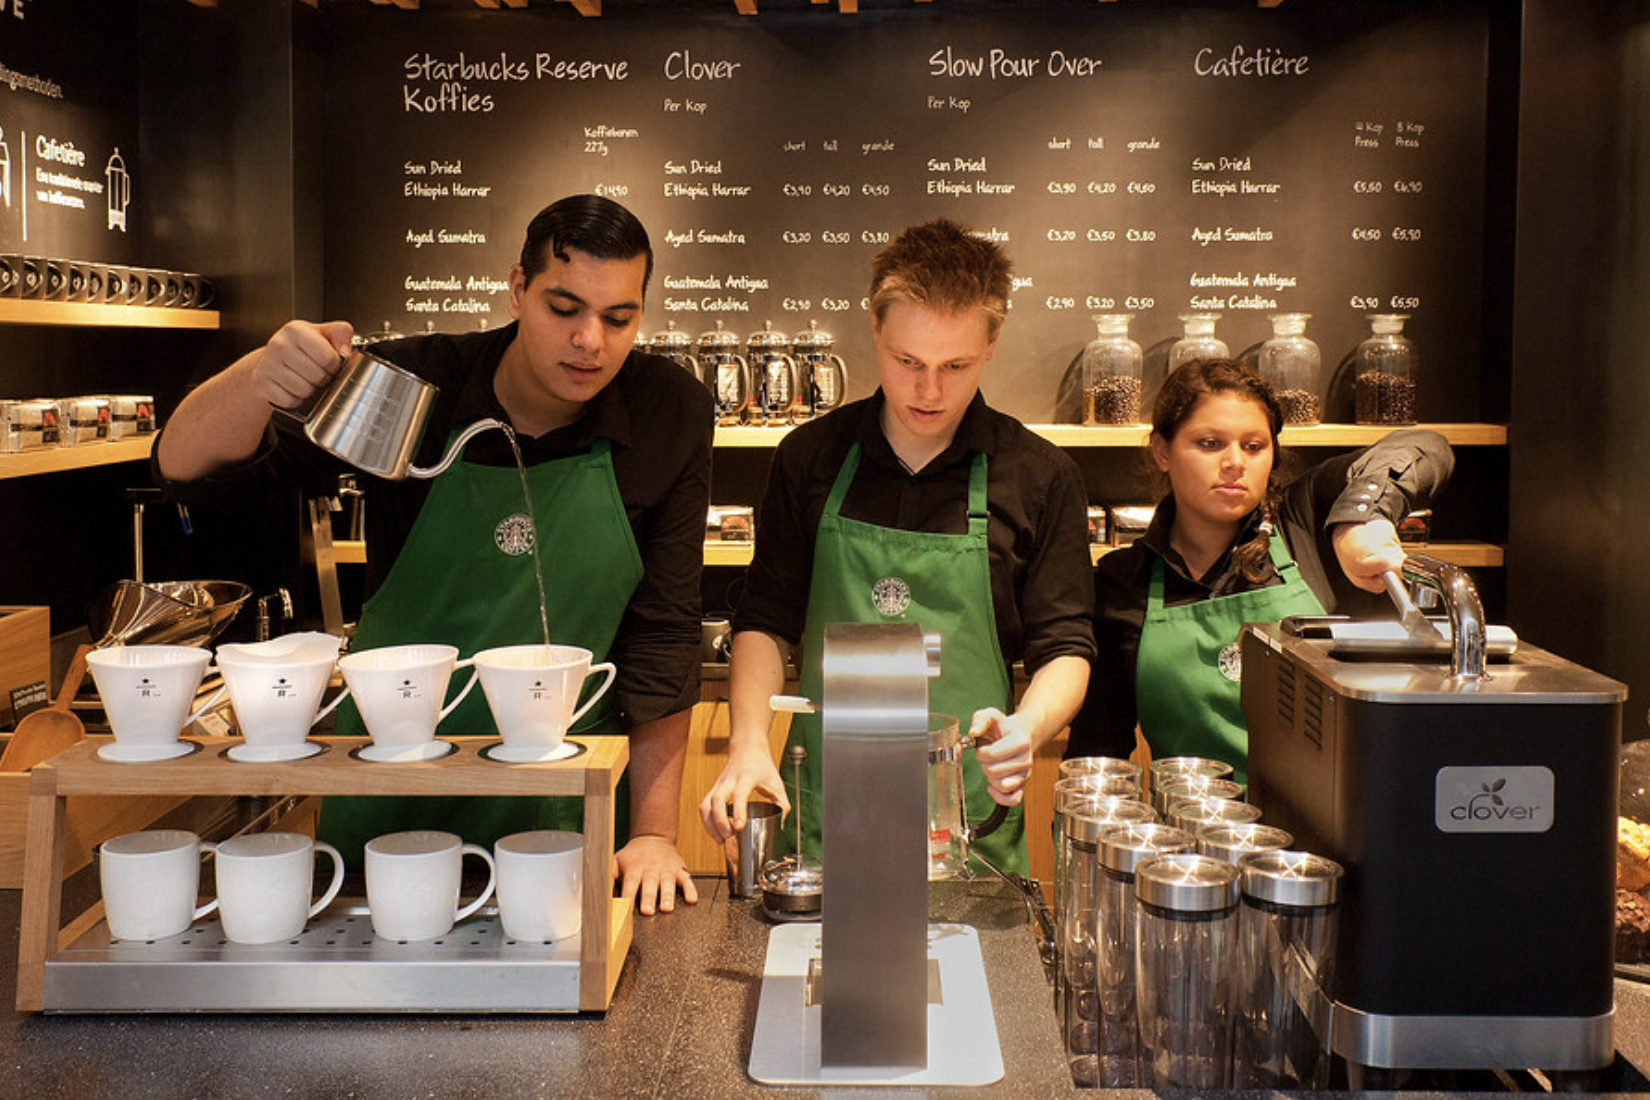 Three Starbucks workers